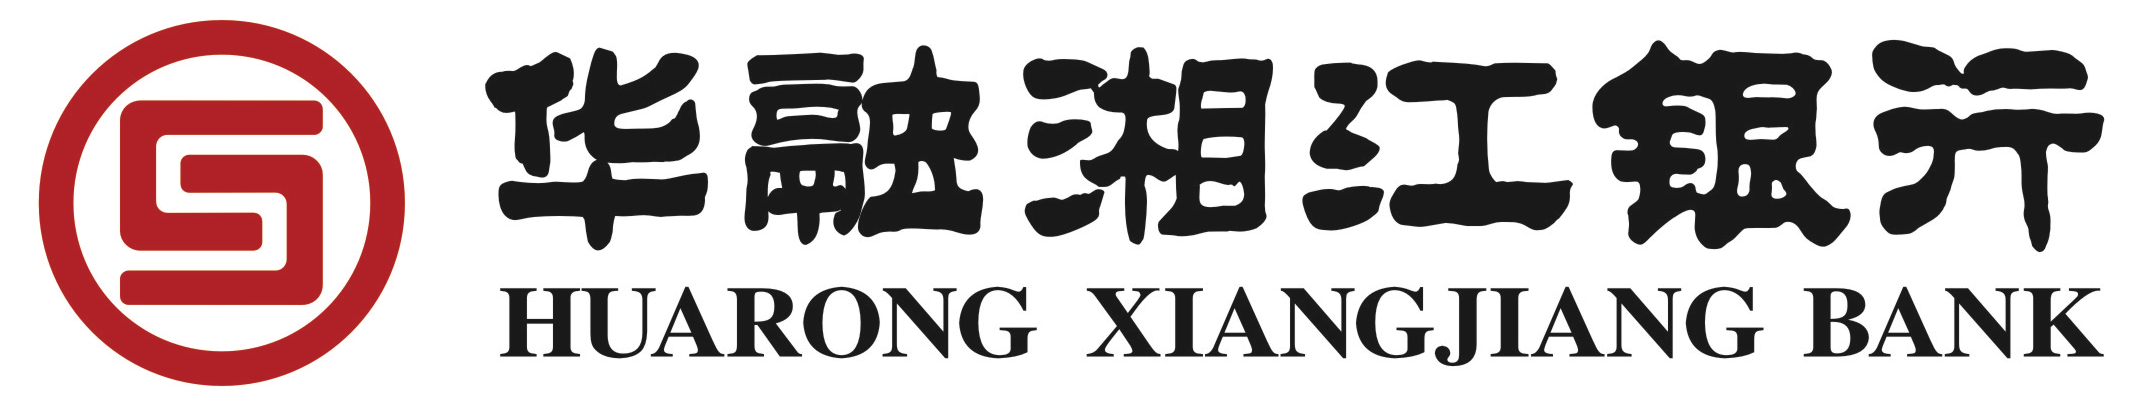 Huarong Xiangjiang Bank Brand Logo